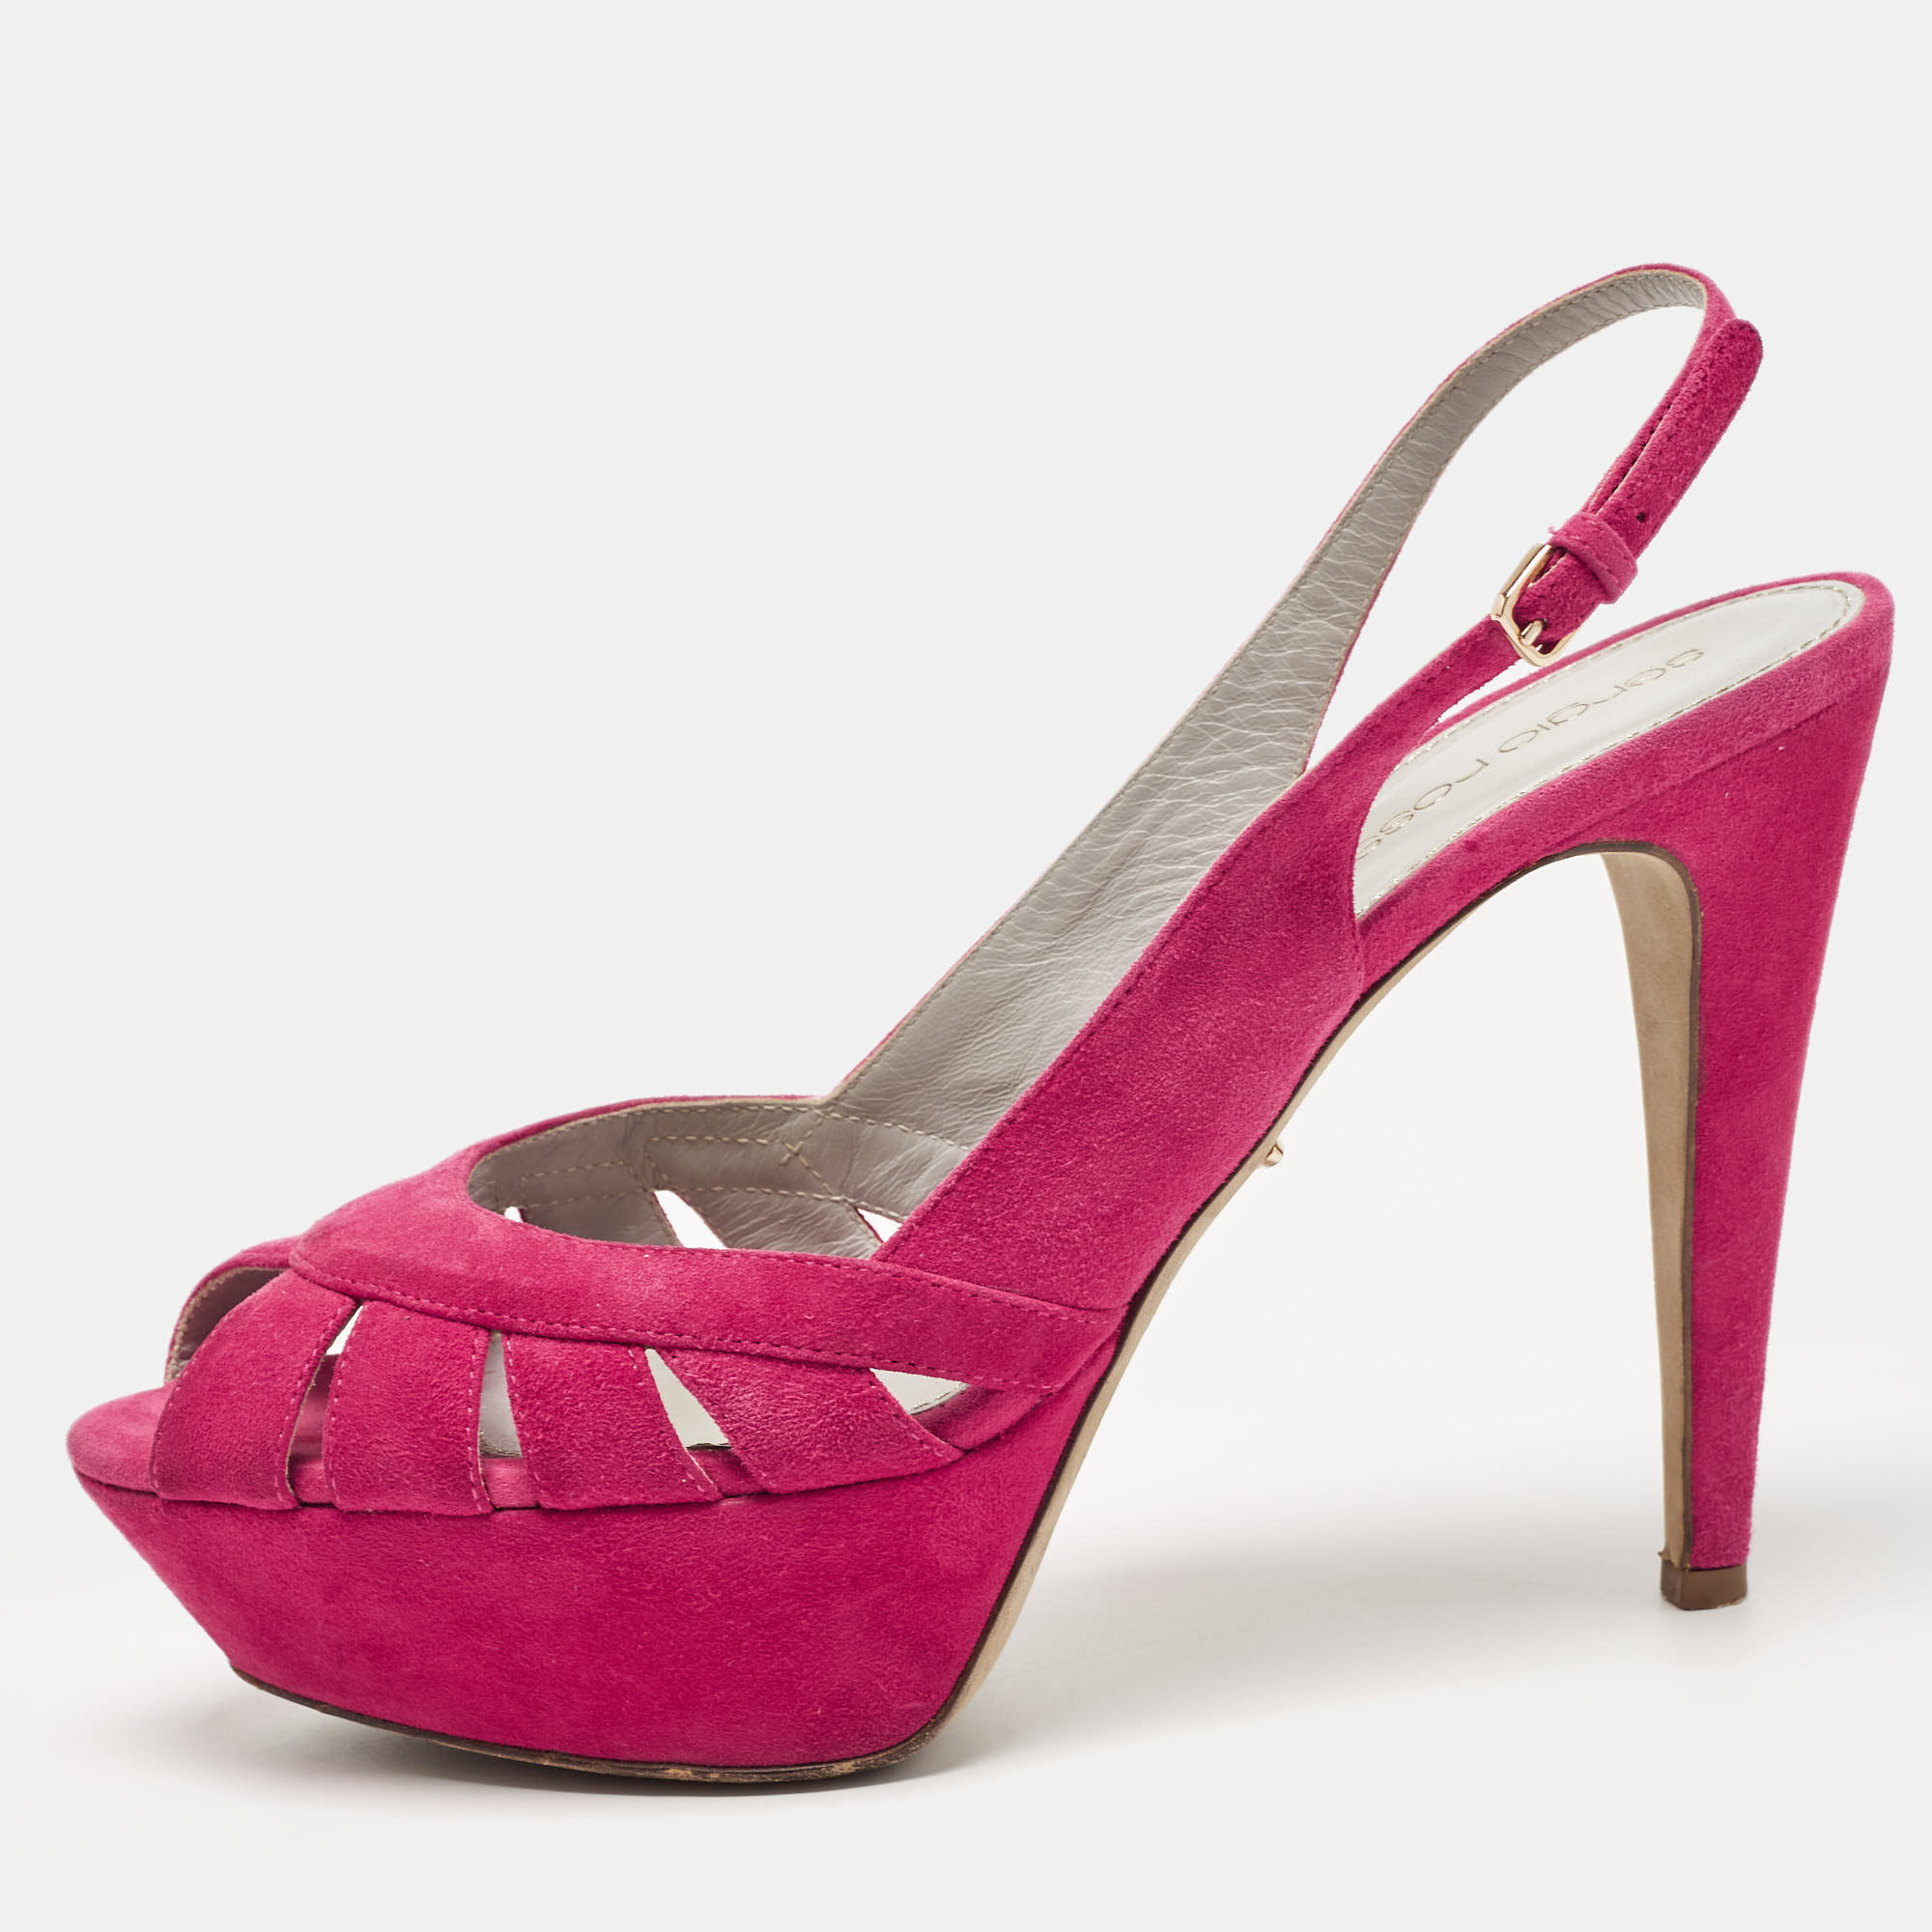 Sergio rossi pink suede platform slingback sandals size 38.5